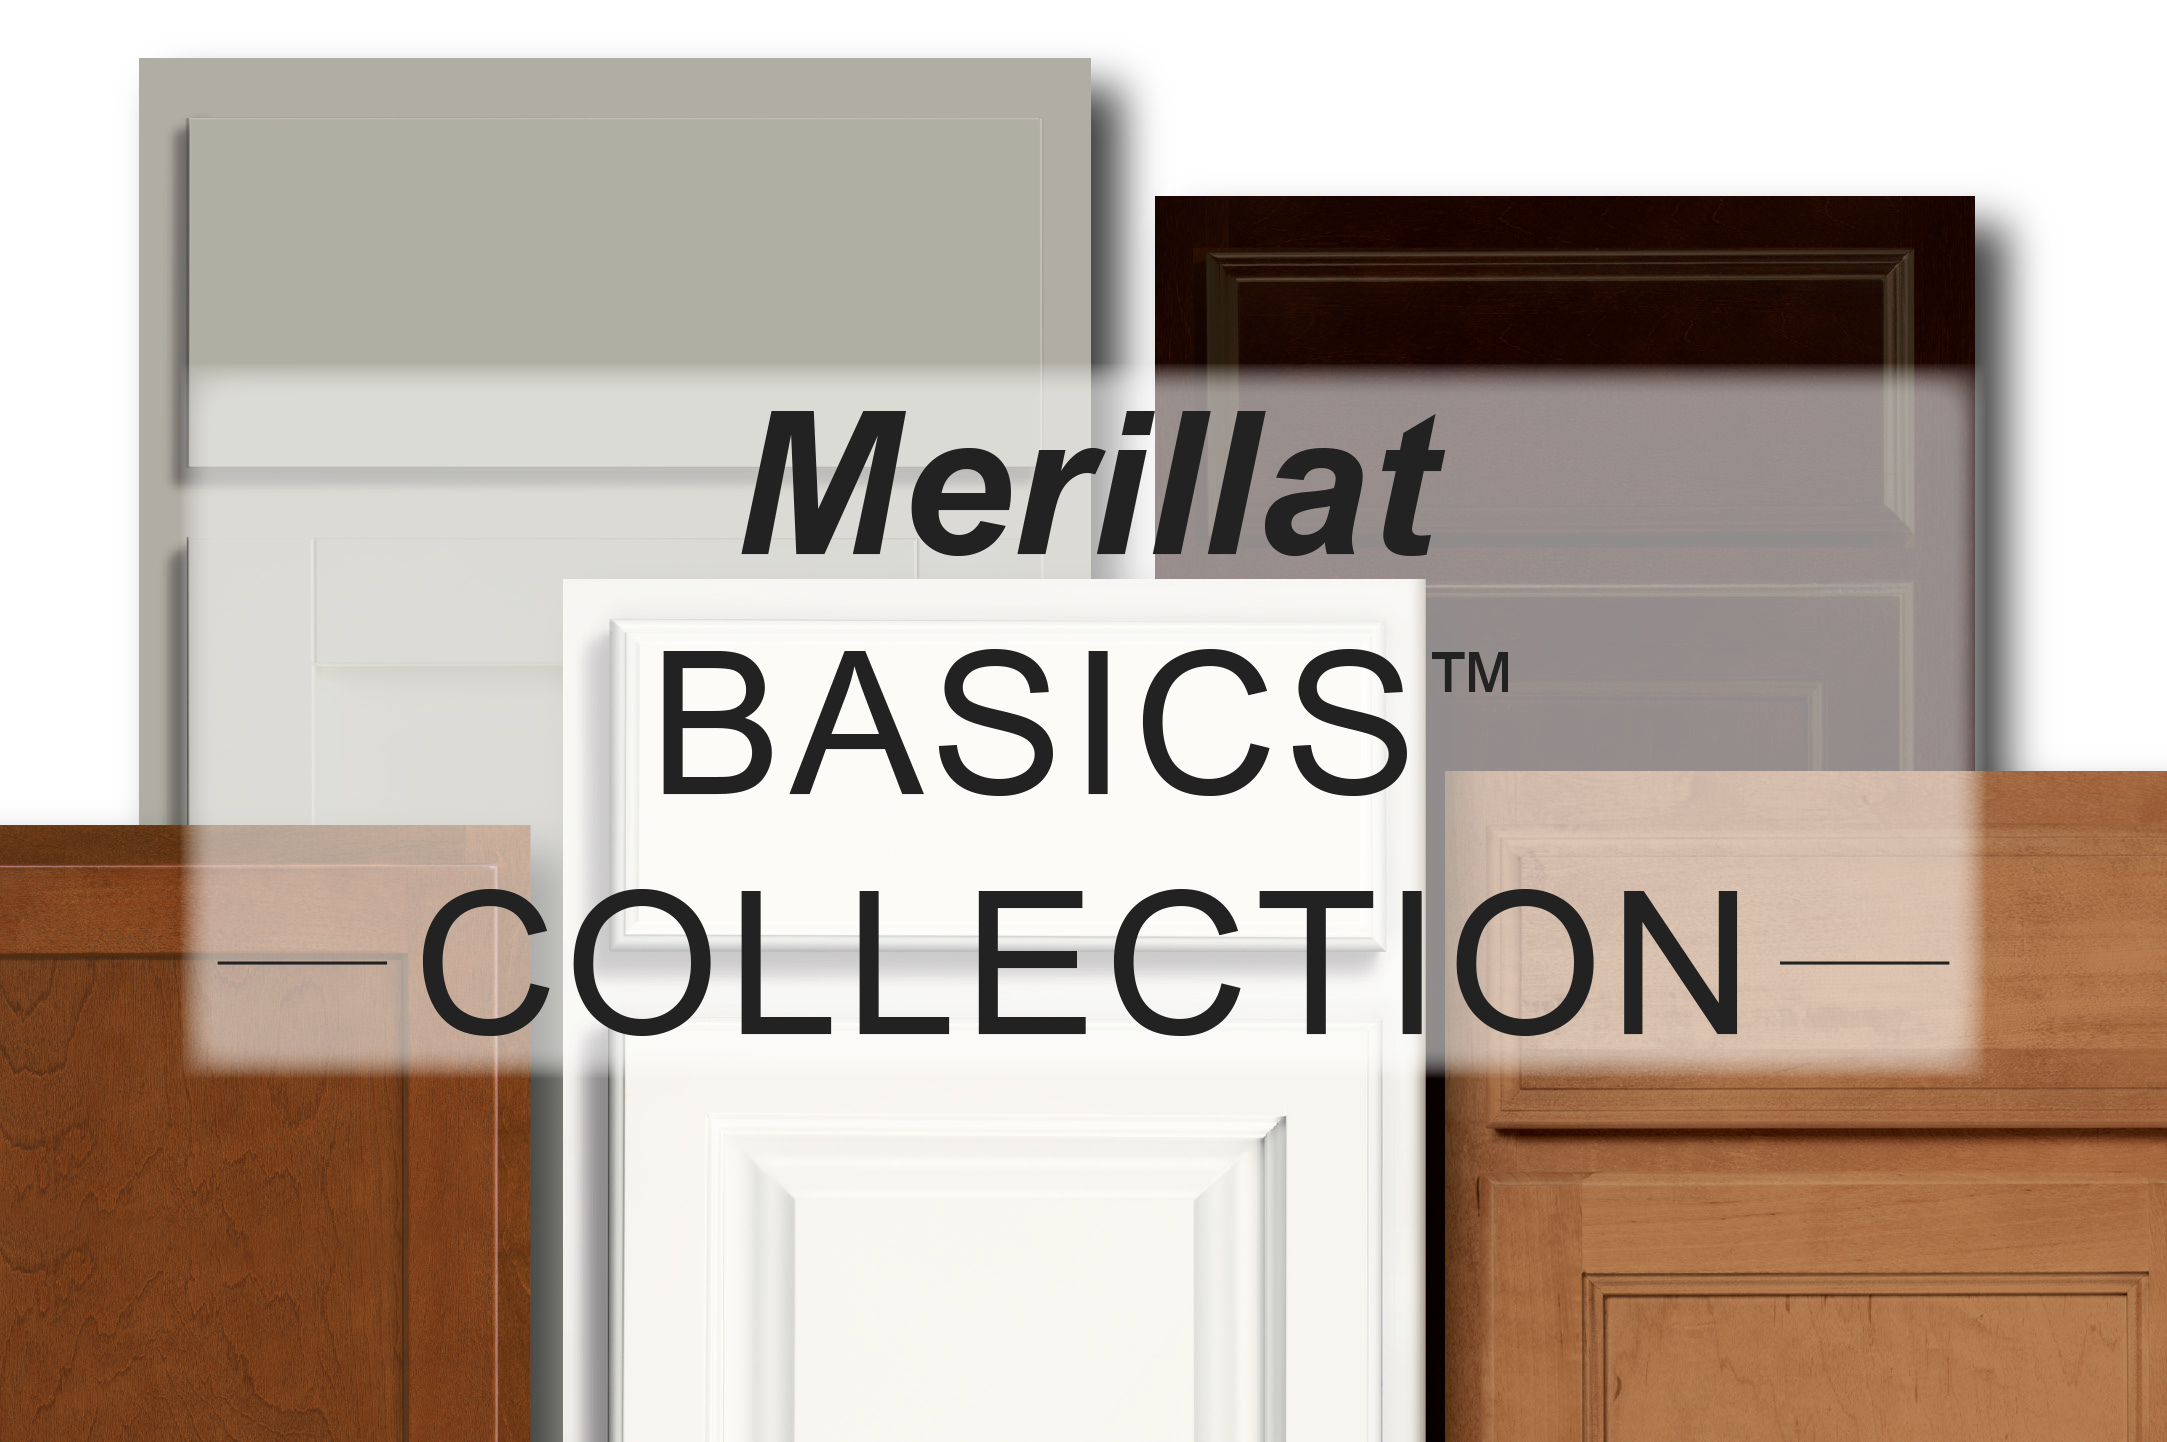 Merillat Basics Collection